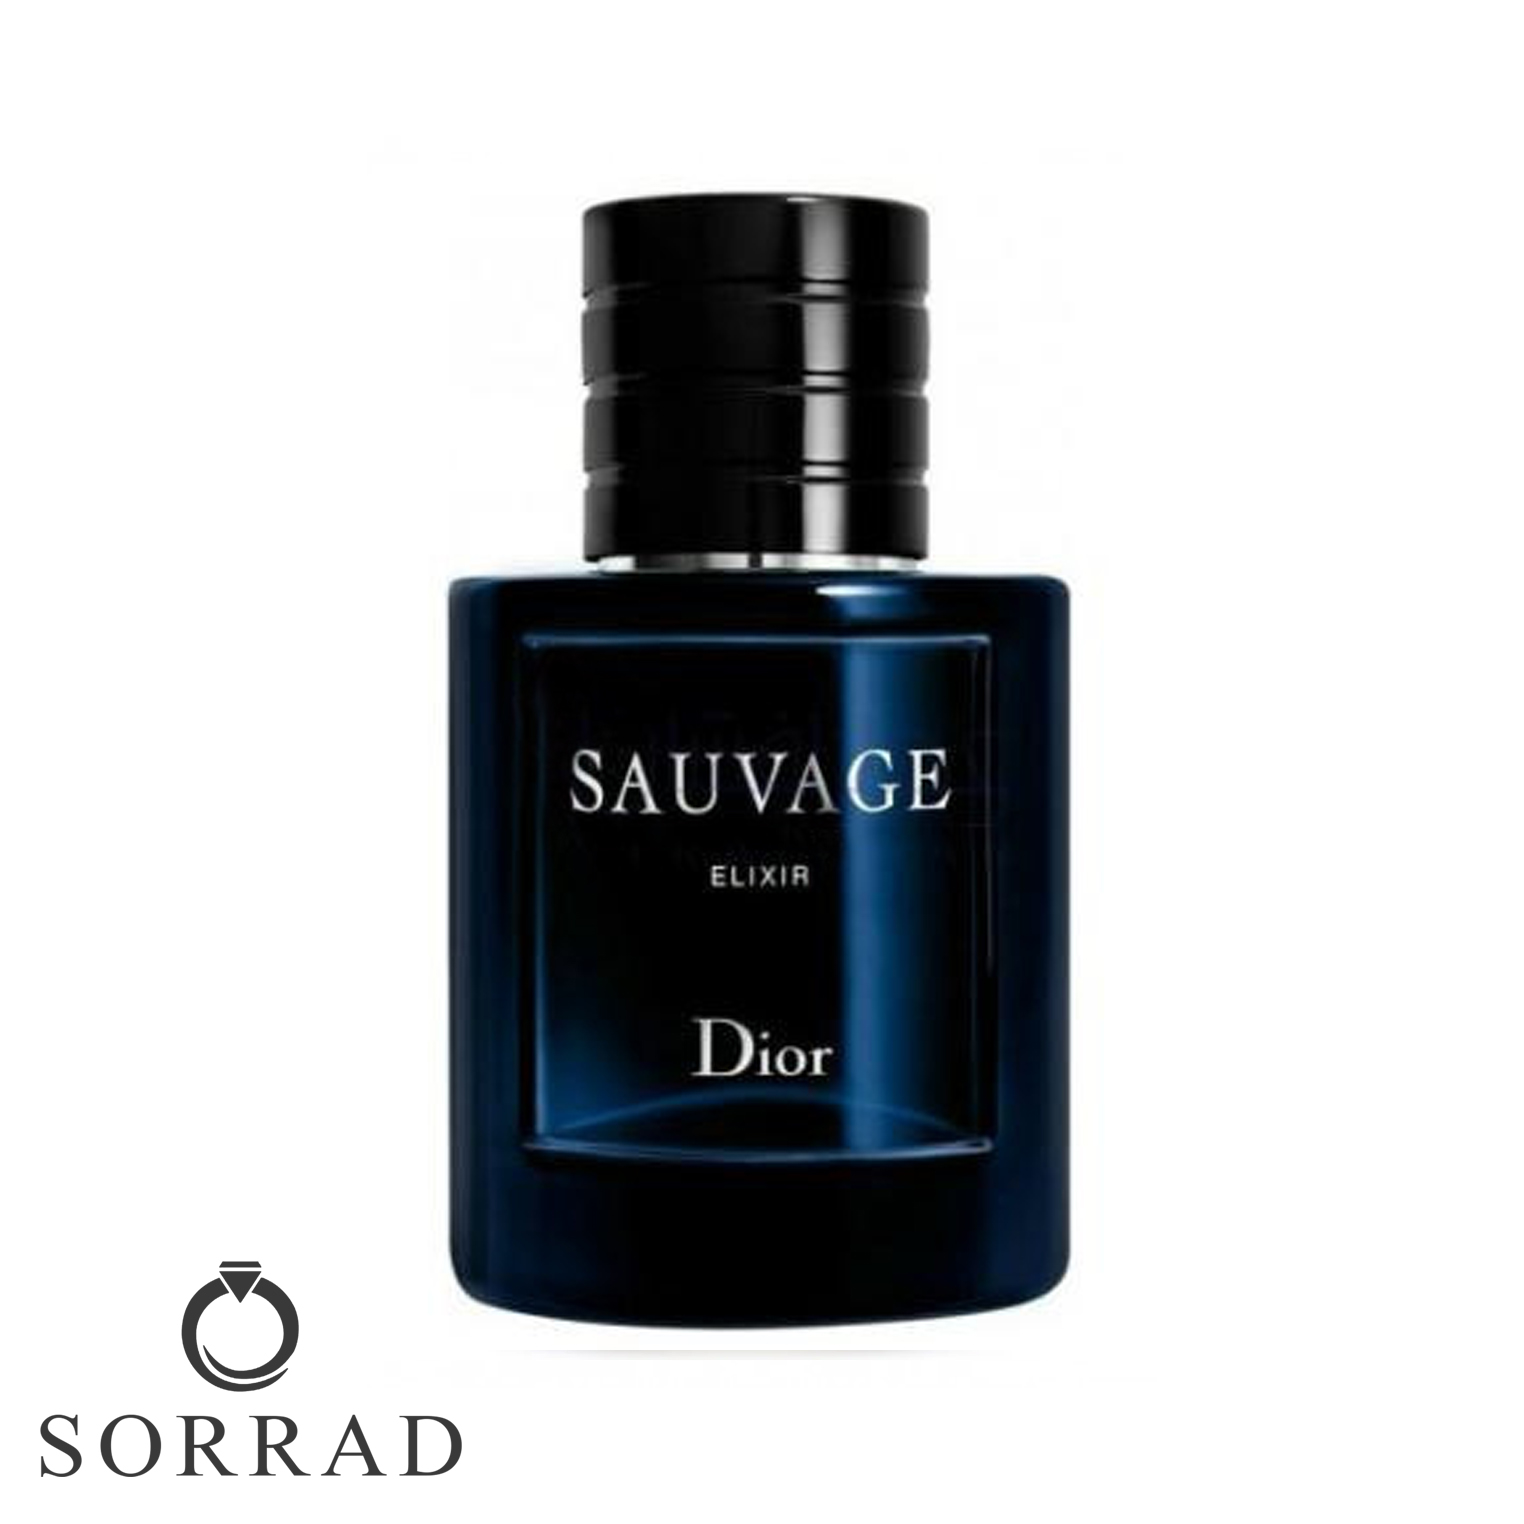 عطر ادکلن دیور ساوج الکسیر | Dior Sauvage Elixir